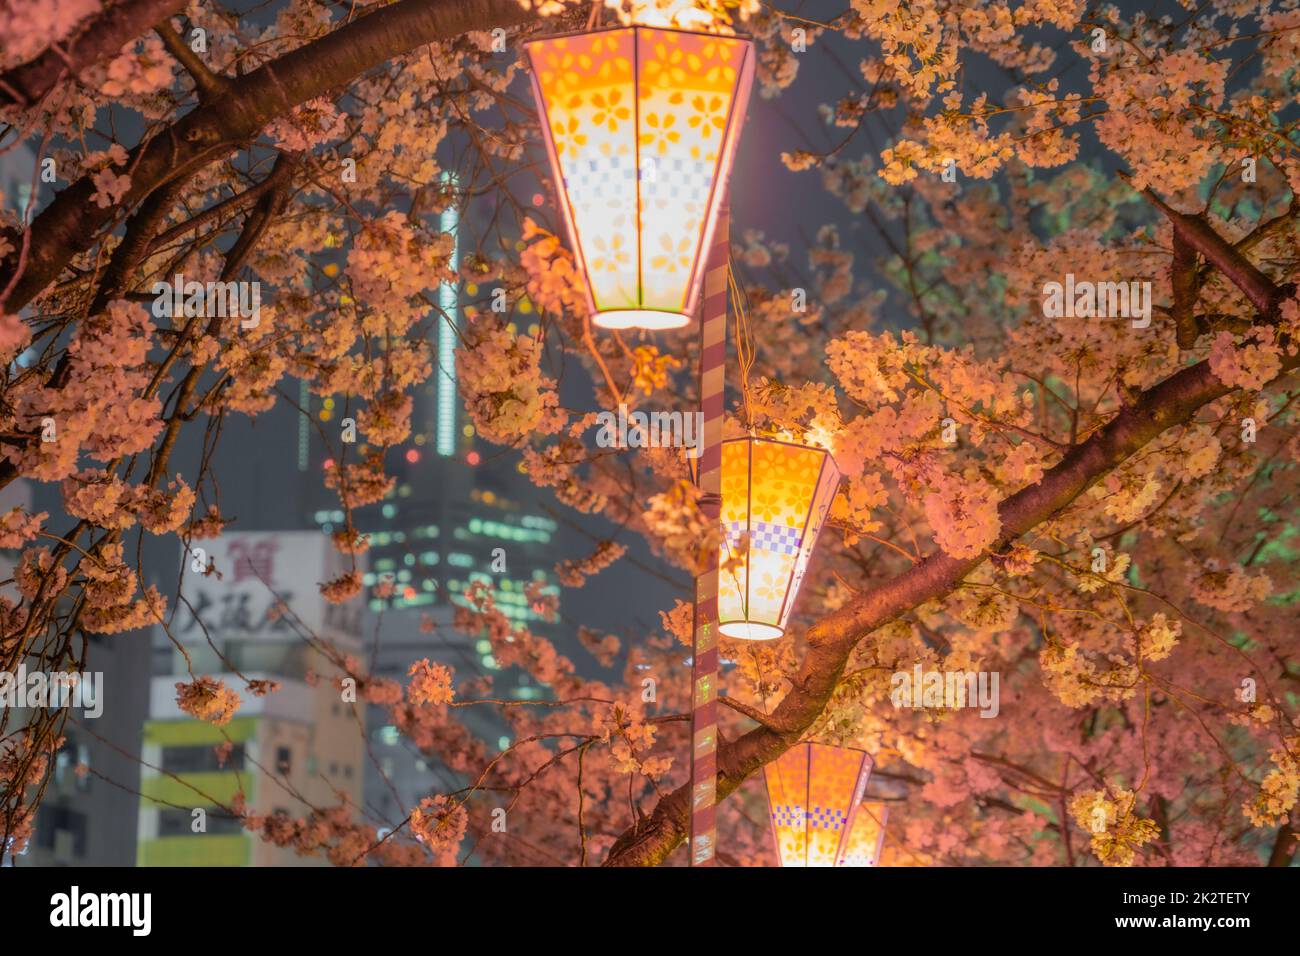 Bild von Nachtkirschblüten und japanischen Laternen Stockfoto